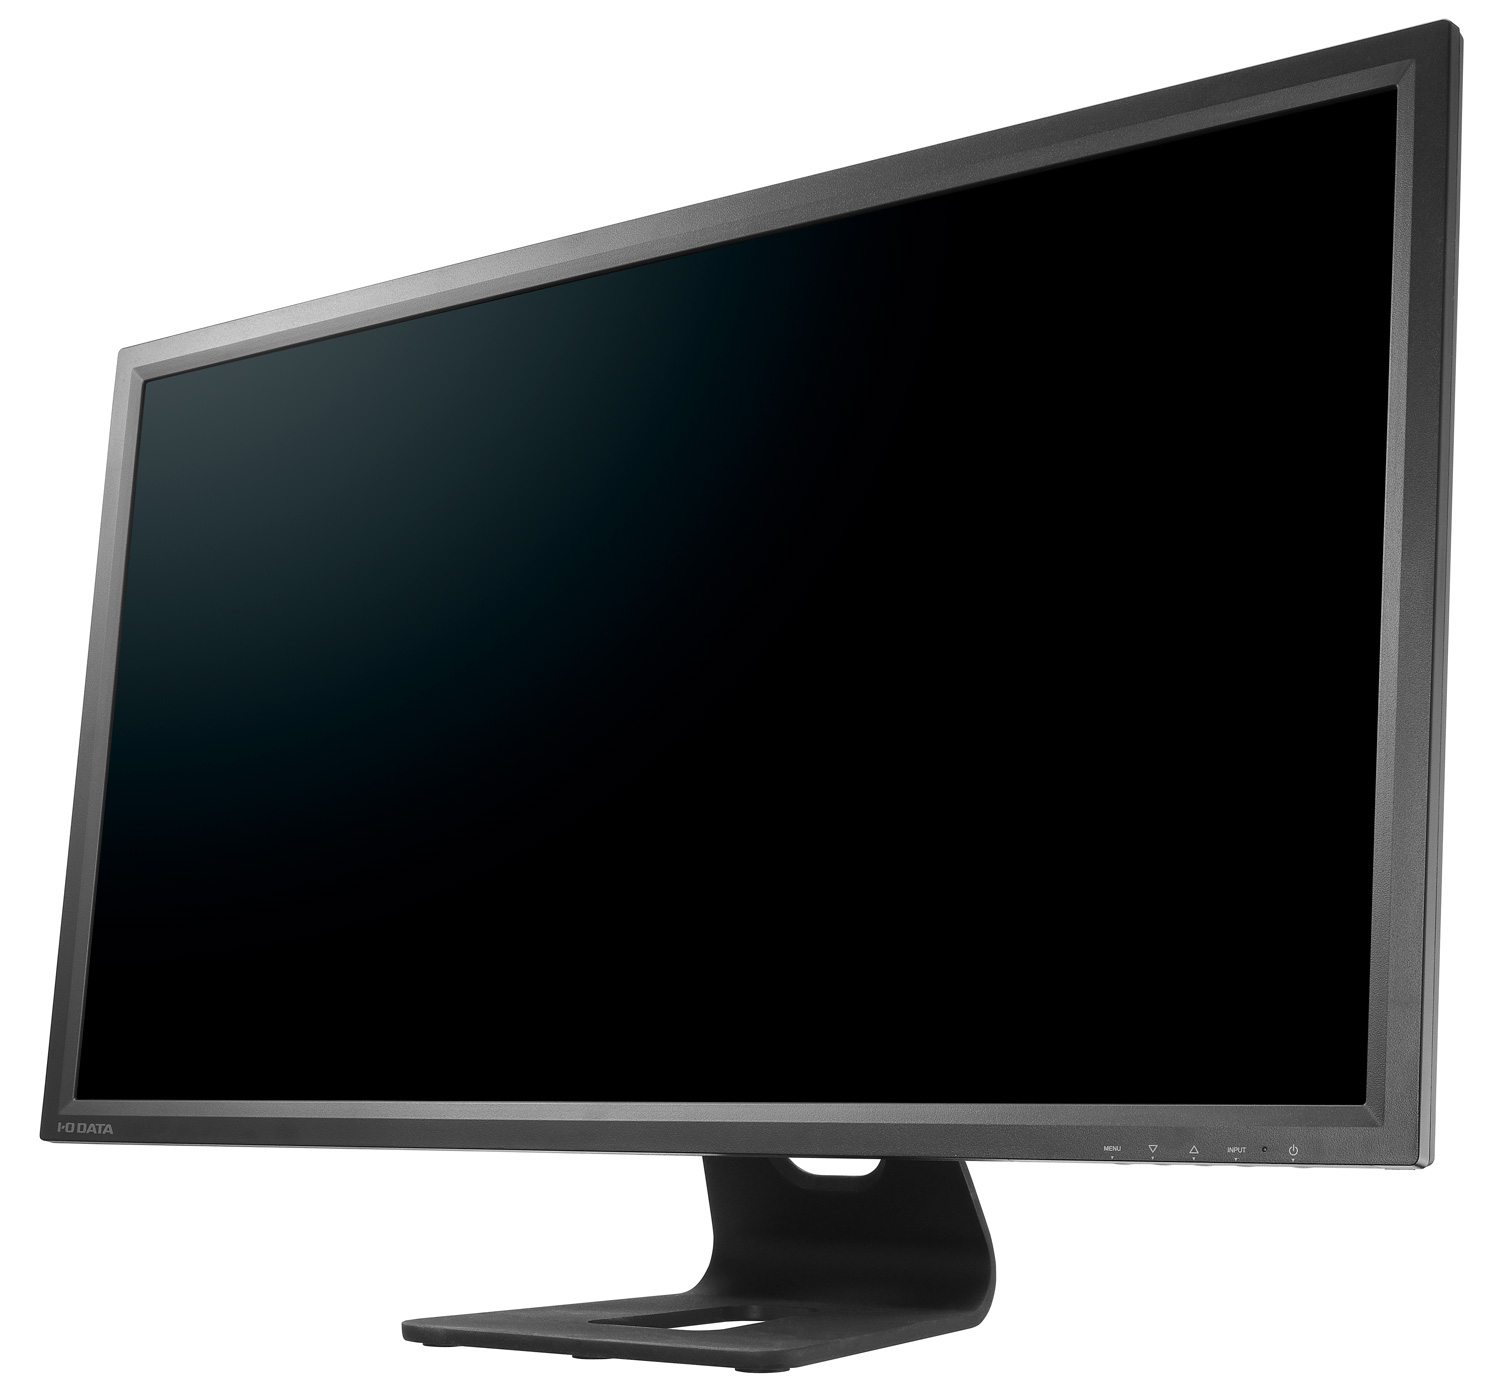 Immagine pubblicata in relazione al seguente contenuto: I-O Data annuncia il monitor Ultra HD da 28-inch LCD-M4K281XB | Nome immagine: news21352_I-O-Data-LCD-M4K281XB_1.jpg